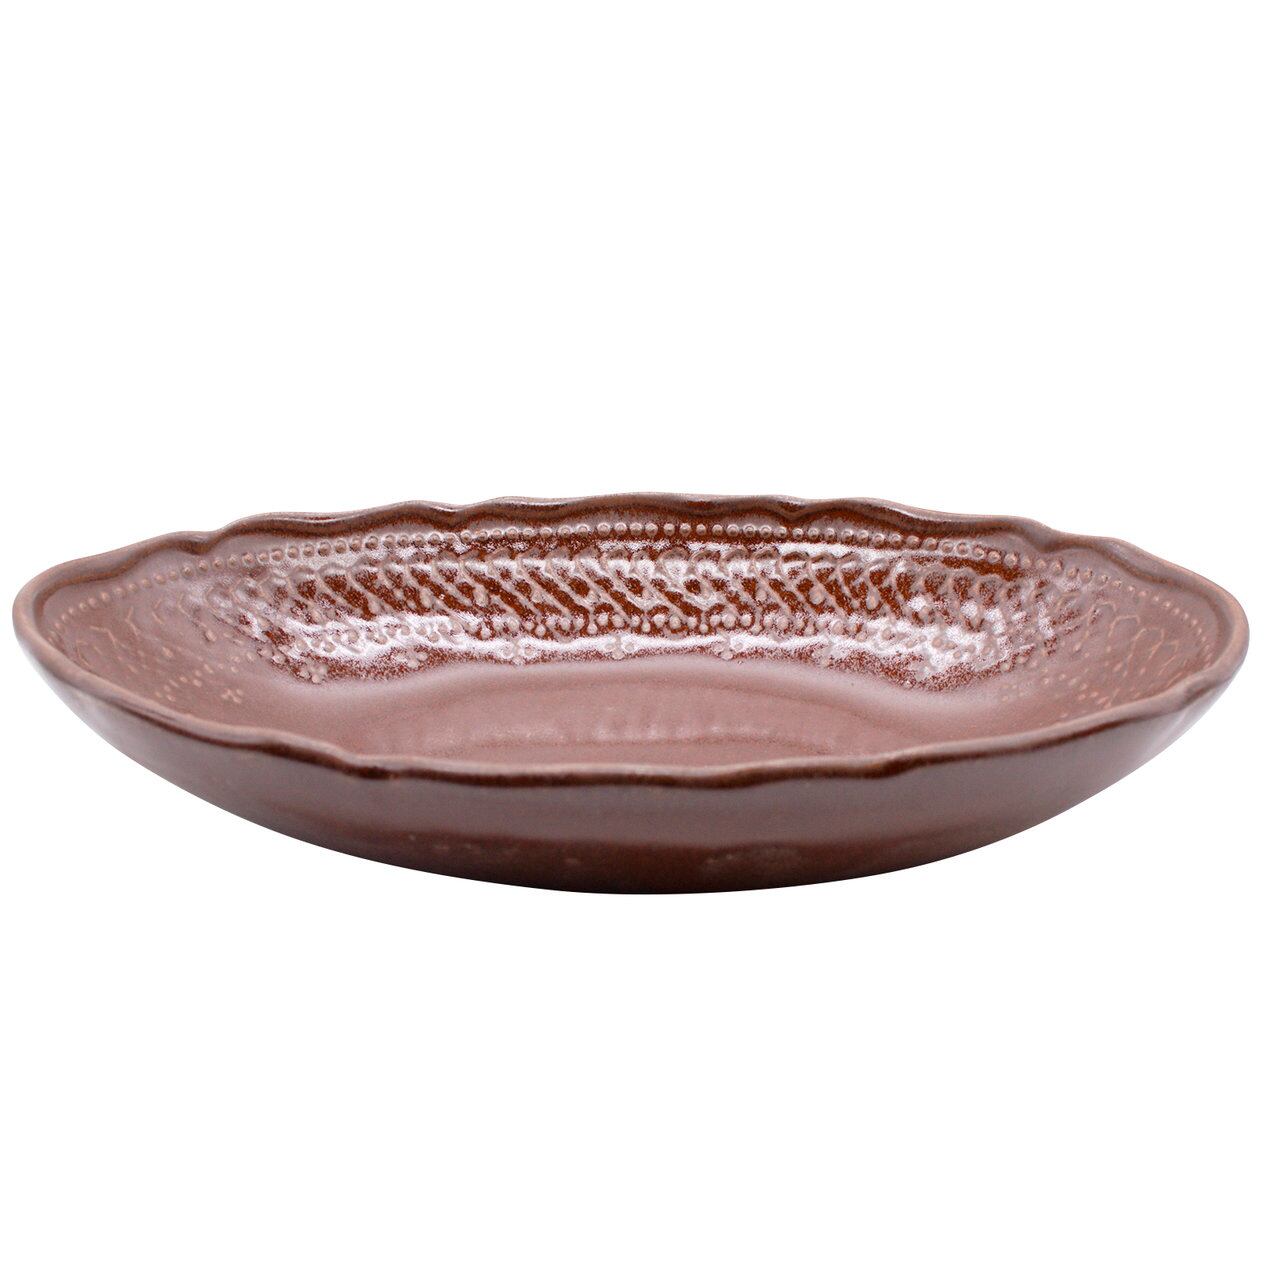 益子焼 わかさま陶芸 「フレンチレース」 楕円鉢 ボウル 皿 約26×18cm ブラウン 256067